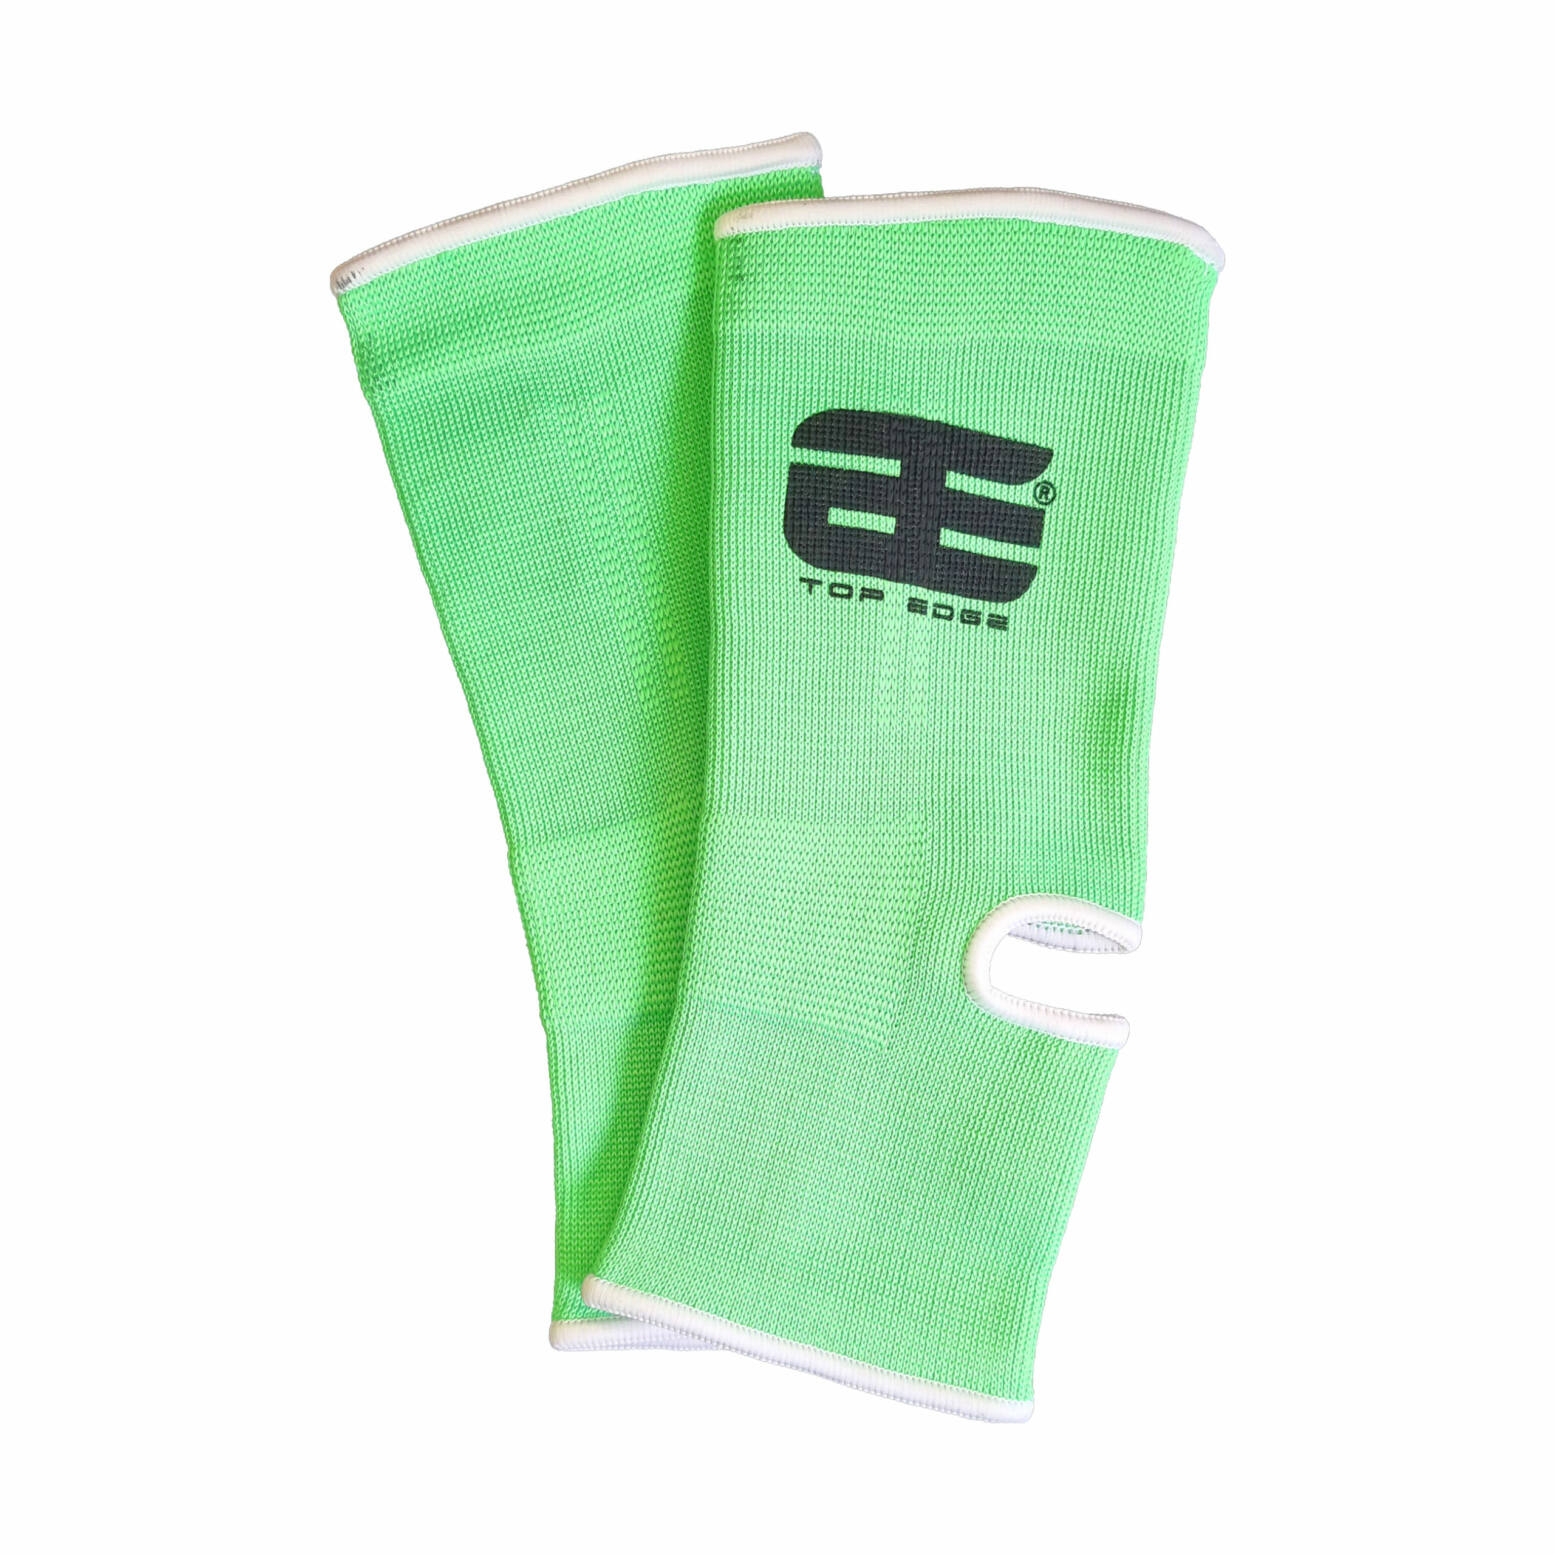 Top Edge Enkelkousen B-Stock – Neon groen 1